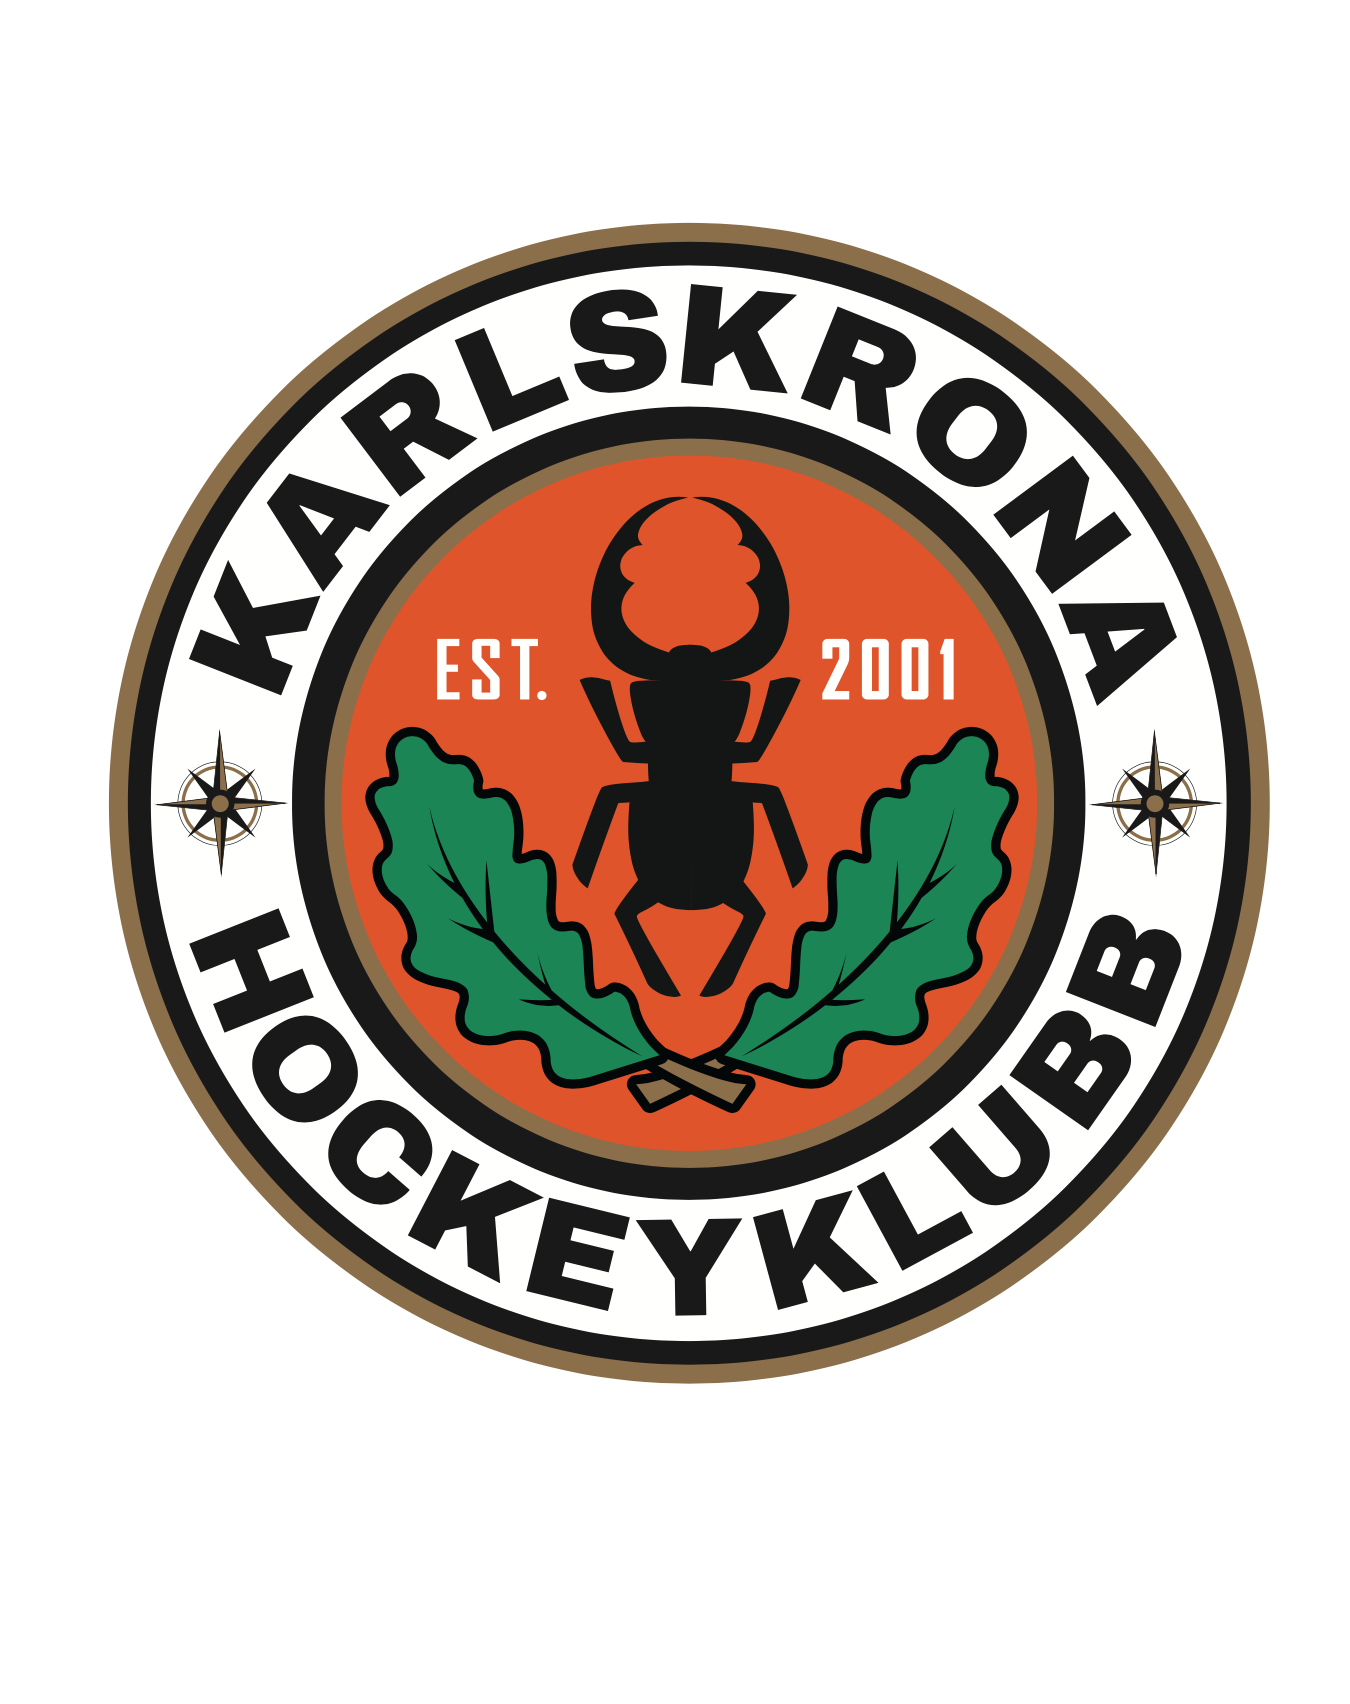 Karlskrona Hockeyklubb Idrott AB